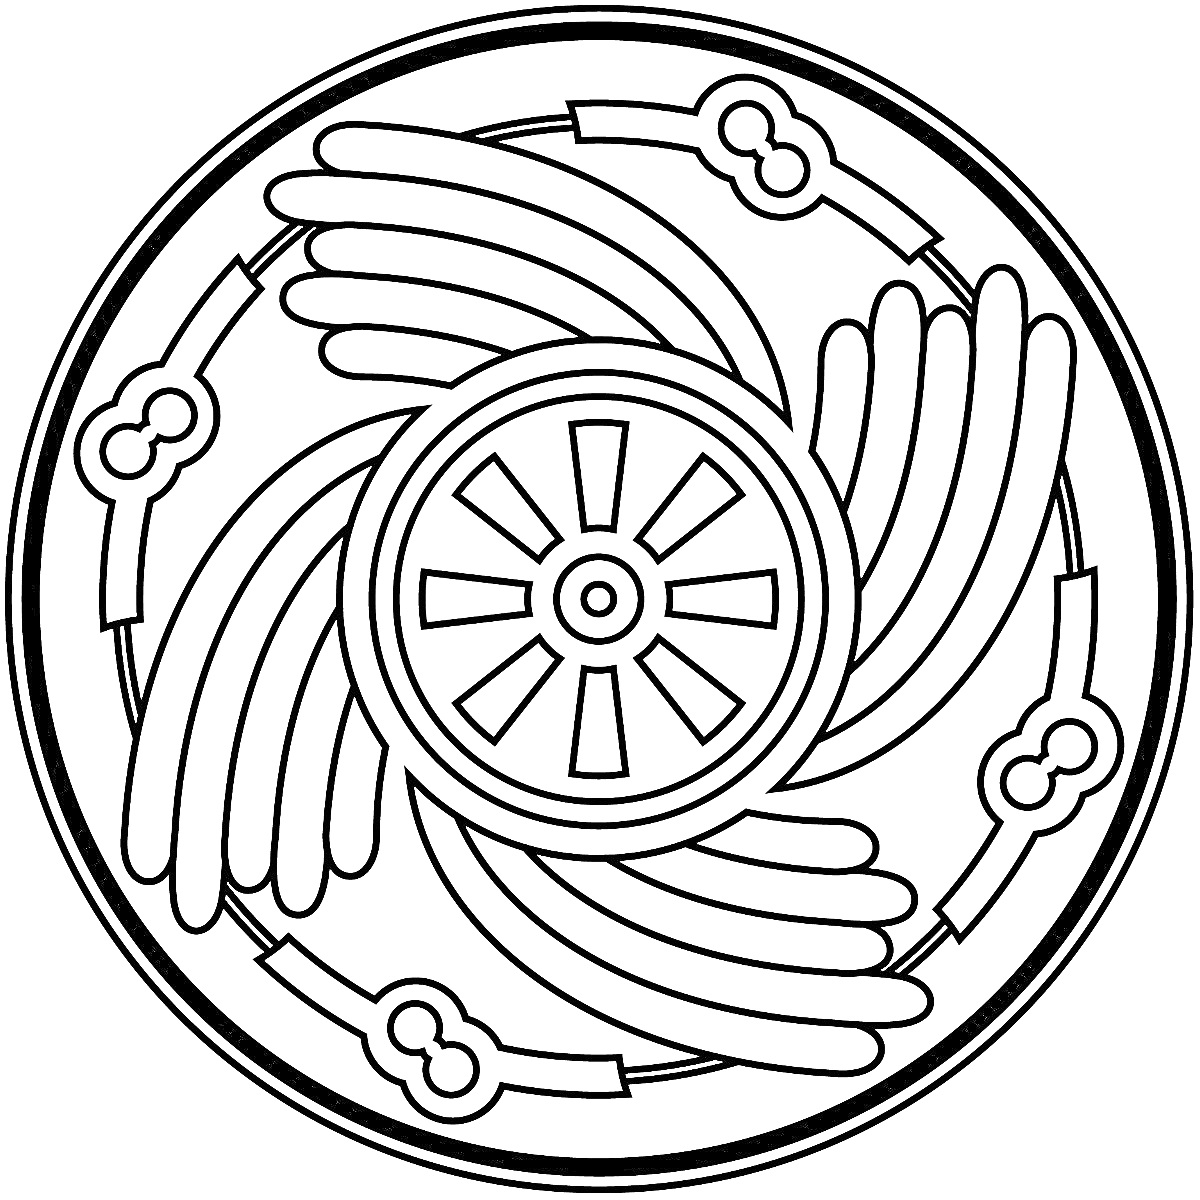 Раскраска Мандала с центральным кругом-солнышком, крыльями и ободом с элементами в форме замочной скважины